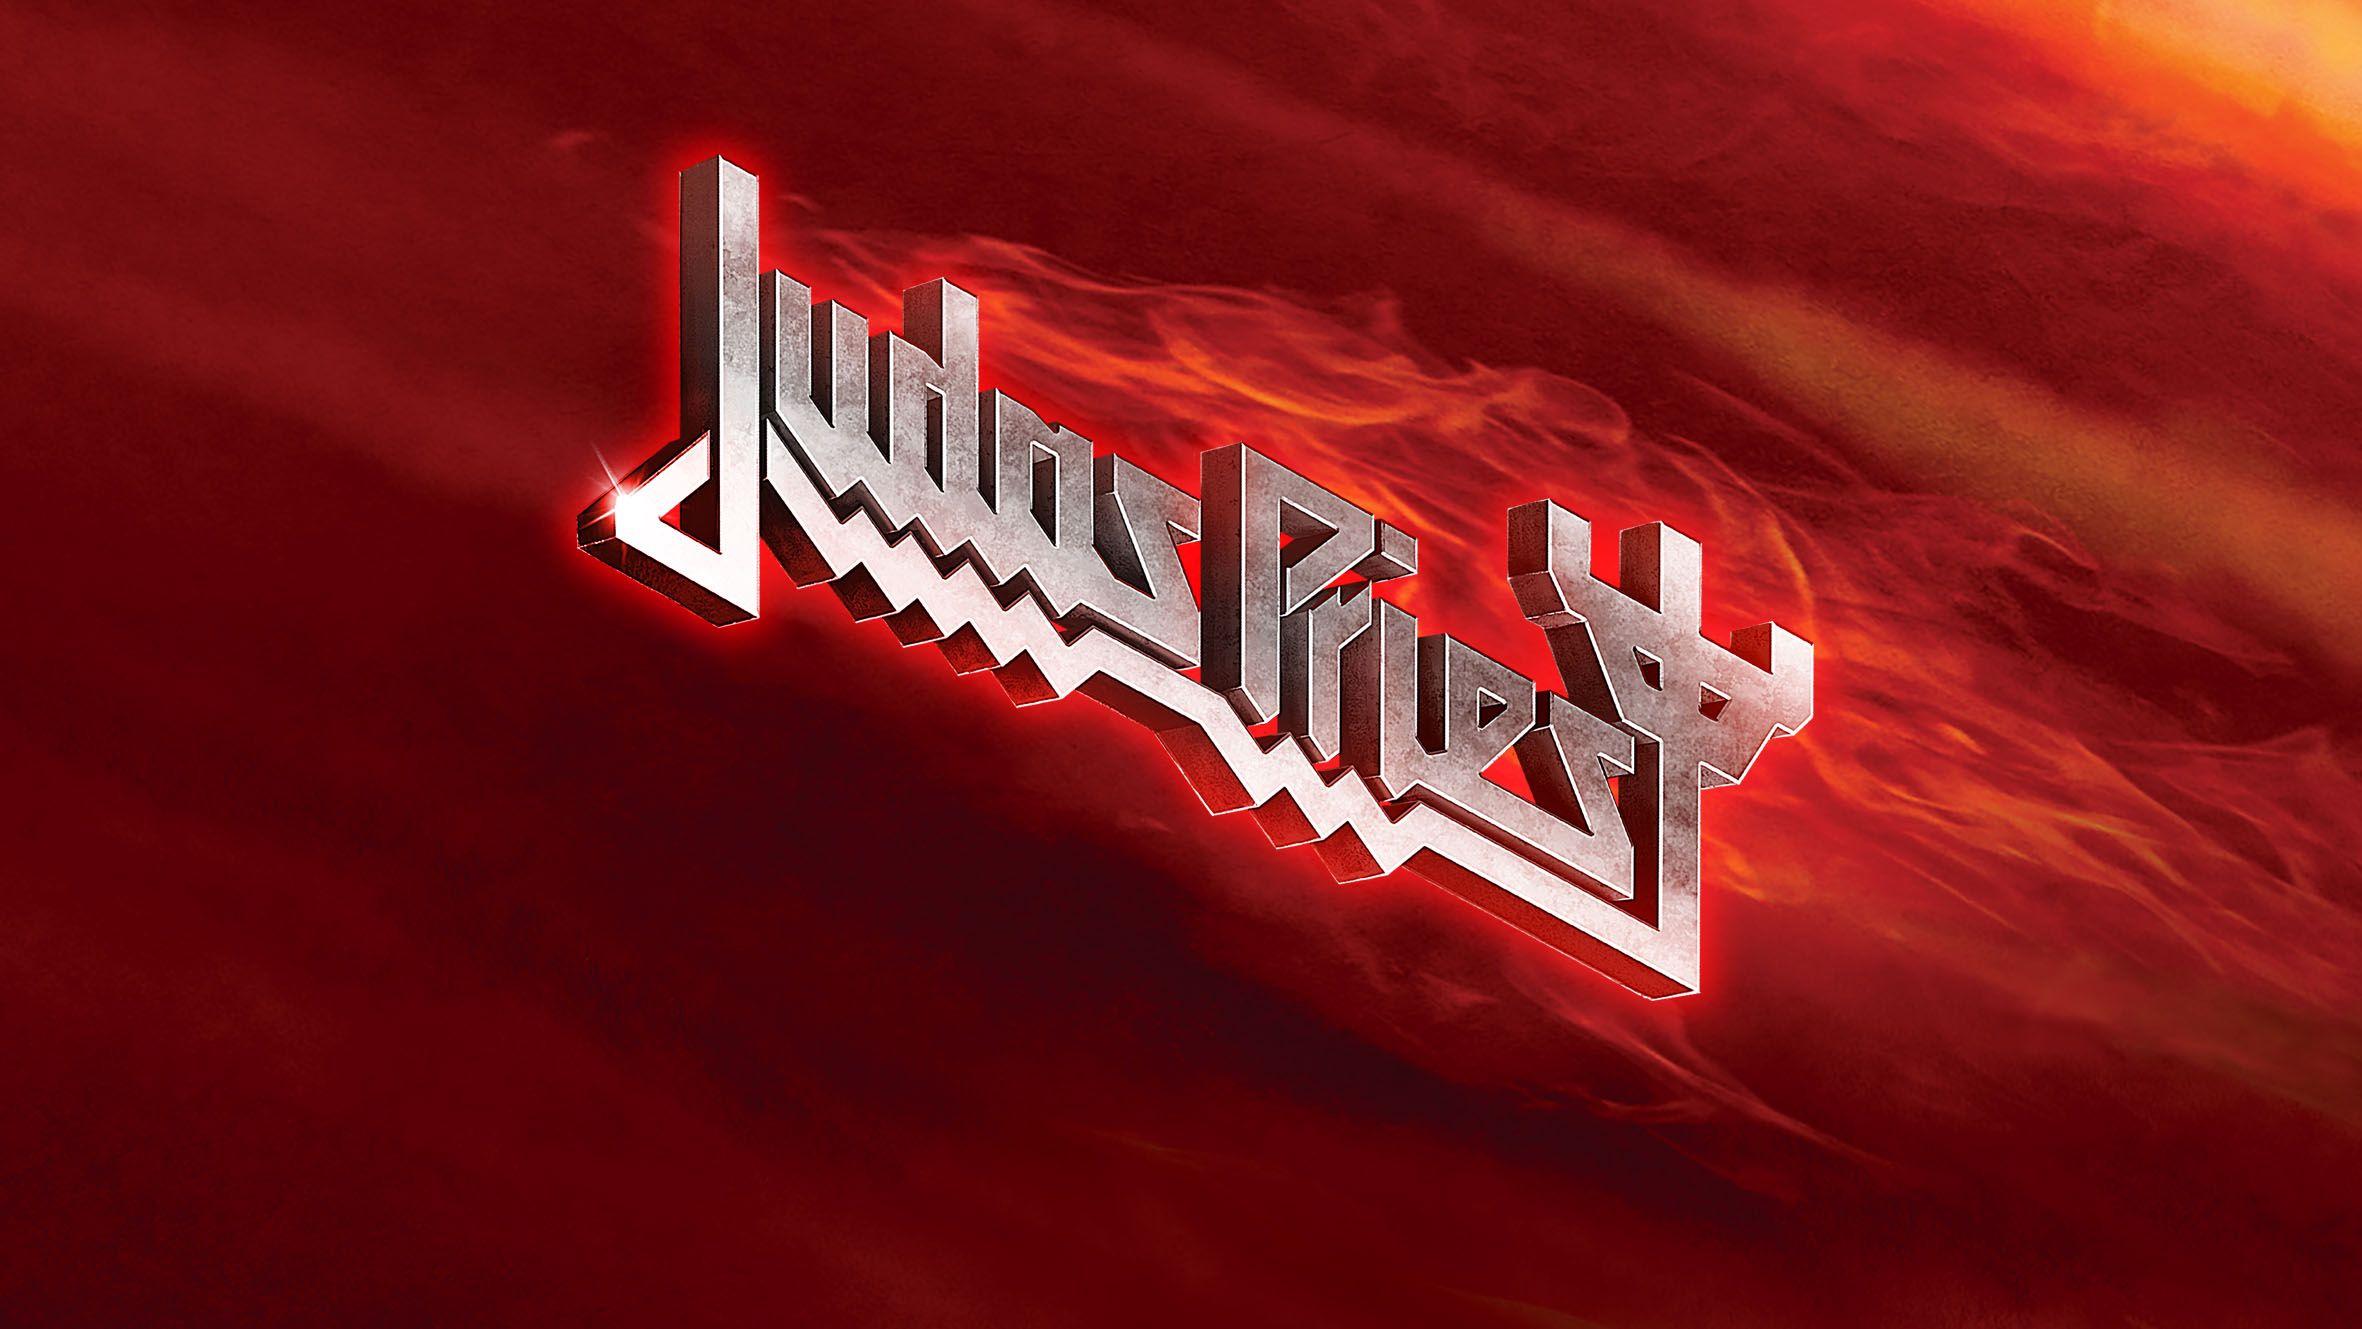 Judas Priest Logo - JudasPriest.com - The Official Judas Priest Website